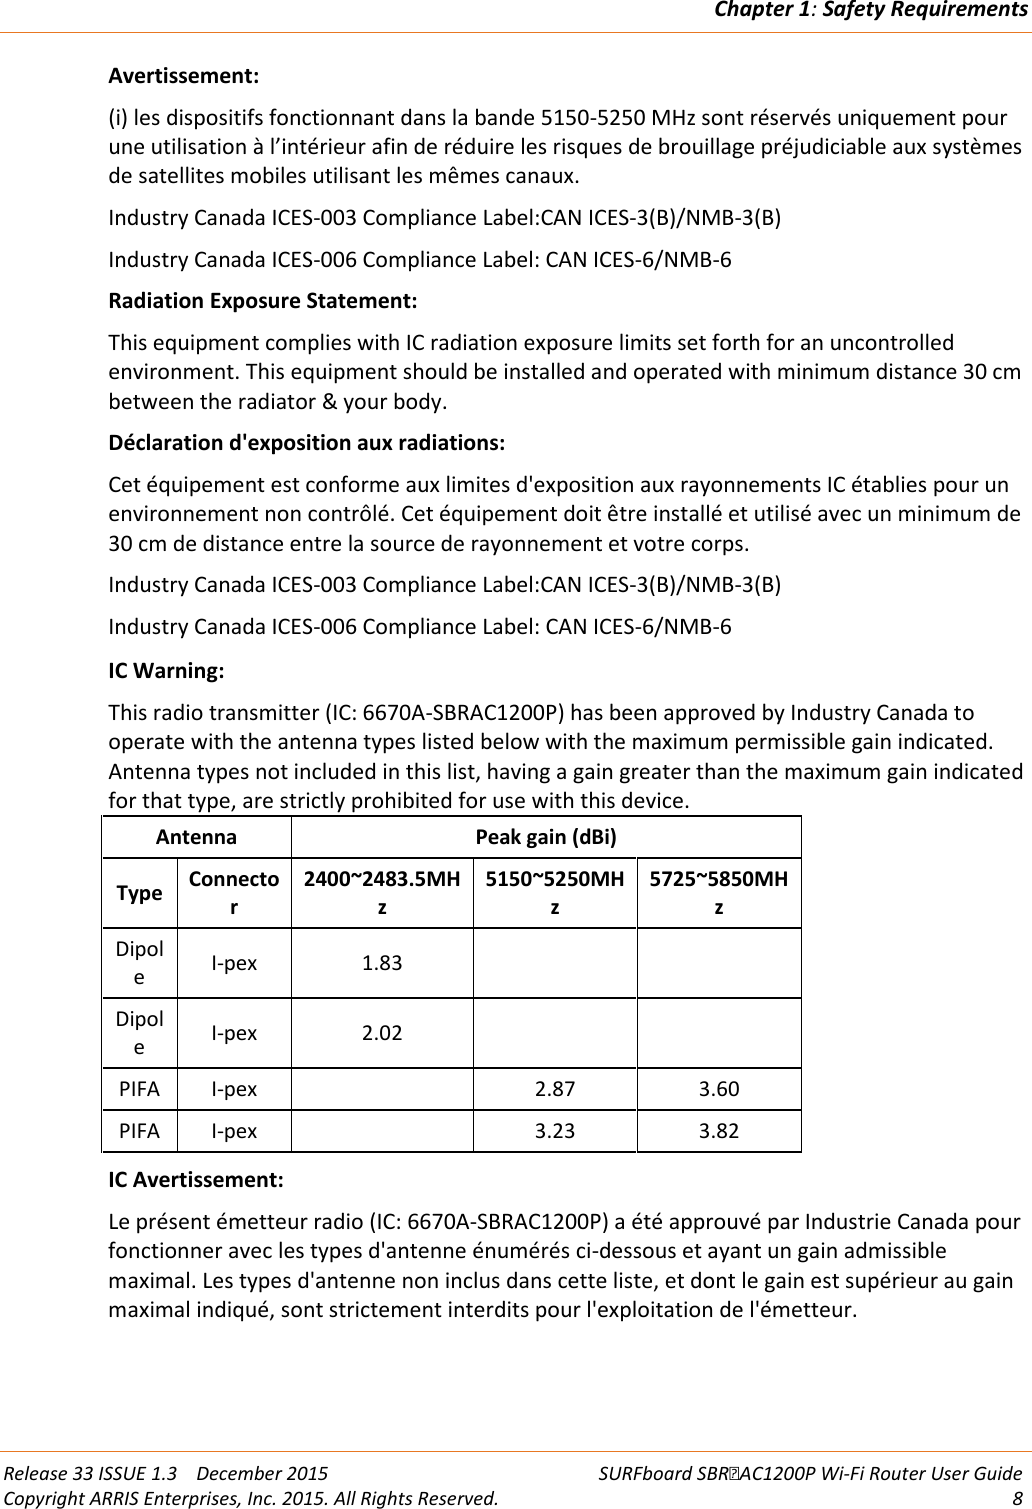 Chapter 1: Safety Requirements  Release 33 ISSUE 1.3    December 2015 SURFboard SBRAC1200P Wi-Fi Router User Guide Copyright ARRIS Enterprises, Inc. 2015. All Rights Reserved.  8  Avertissement: (i) les dispositifs fonctionnant dans la bande 5150-5250 MHz sont réservés uniquement pour une utilisation à l’intérieur afin de réduire les risques de brouillage préjudiciable aux systèmes de satellites mobiles utilisant les mêmes canaux. Industry Canada ICES-003 Compliance Label:CAN ICES-3(B)/NMB-3(B) Industry Canada ICES-006 Compliance Label: CAN ICES-6/NMB-6 Radiation Exposure Statement: This equipment complies with IC radiation exposure limits set forth for an uncontrolled environment. This equipment should be installed and operated with minimum distance 30 cm between the radiator &amp; your body. Déclaration d&apos;exposition aux radiations: Cet équipement est conforme aux limites d&apos;exposition aux rayonnements IC établies pour un environnement non contrôlé. Cet équipement doit être installé et utilisé avec un minimum de 30 cm de distance entre la source de rayonnement et votre corps. Industry Canada ICES-003 Compliance Label:CAN ICES-3(B)/NMB-3(B) Industry Canada ICES-006 Compliance Label: CAN ICES-6/NMB-6   IC Warning: This radio transmitter (IC: 6670A-SBRAC1200P) has been approved by Industry Canada to operate with the antenna types listed below with the maximum permissible gain indicated. Antenna types not included in this list, having a gain greater than the maximum gain indicated for that type, are strictly prohibited for use with this device.  Antenna Peak gain (dBi) Type  Connector 2400~2483.5MHz 5150~5250MHz 5725~5850MHz Dipole  I-pex 1.83     Dipole  I-pex 2.02     PIFA  I-pex    2.87 3.60 PIFA  I-pex    3.23 3.82 IC Avertissement: Le présent émetteur radio (IC: 6670A-SBRAC1200P) a été approuvé par Industrie Canada pour fonctionner avec les types d&apos;antenne énumérés ci-dessous et ayant un gain admissible maximal. Les types d&apos;antenne non inclus dans cette liste, et dont le gain est supérieur au gain maximal indiqué, sont strictement interdits pour l&apos;exploitation de l&apos;émetteur. 